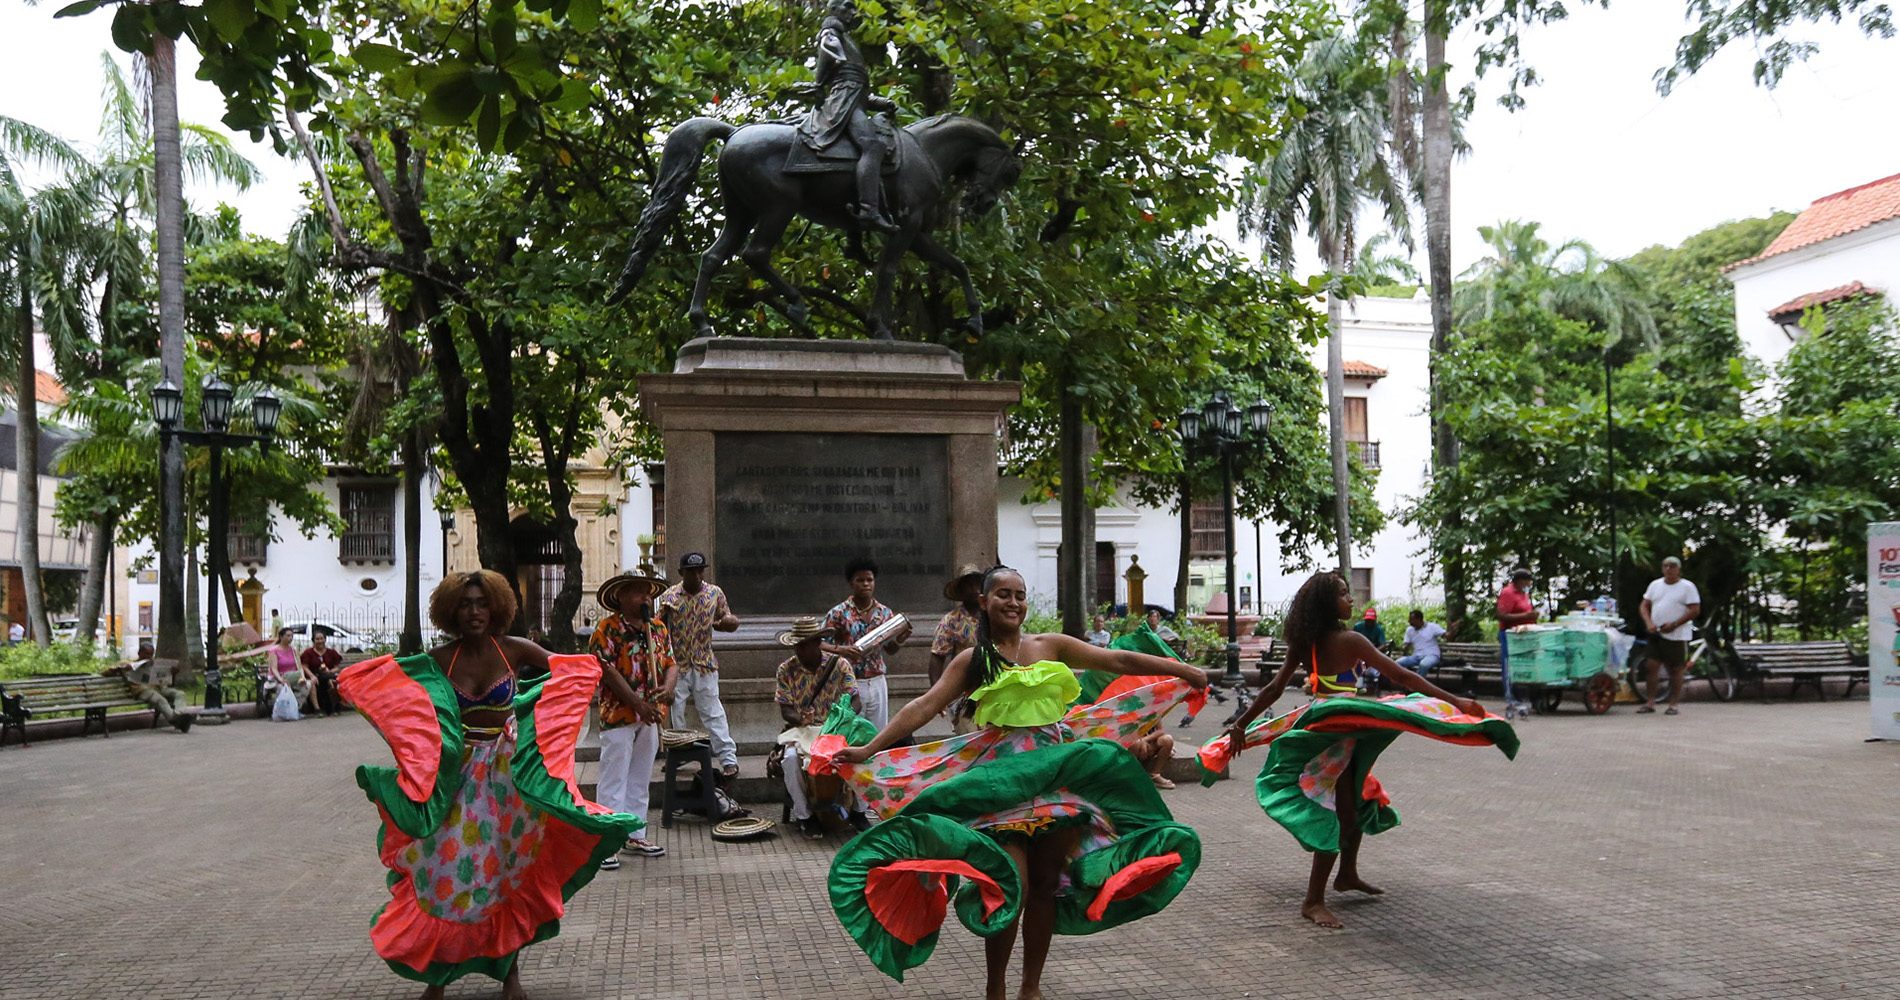 Démonstration de danse Mapale (afro-colombienne) devant la statue de Bolivar